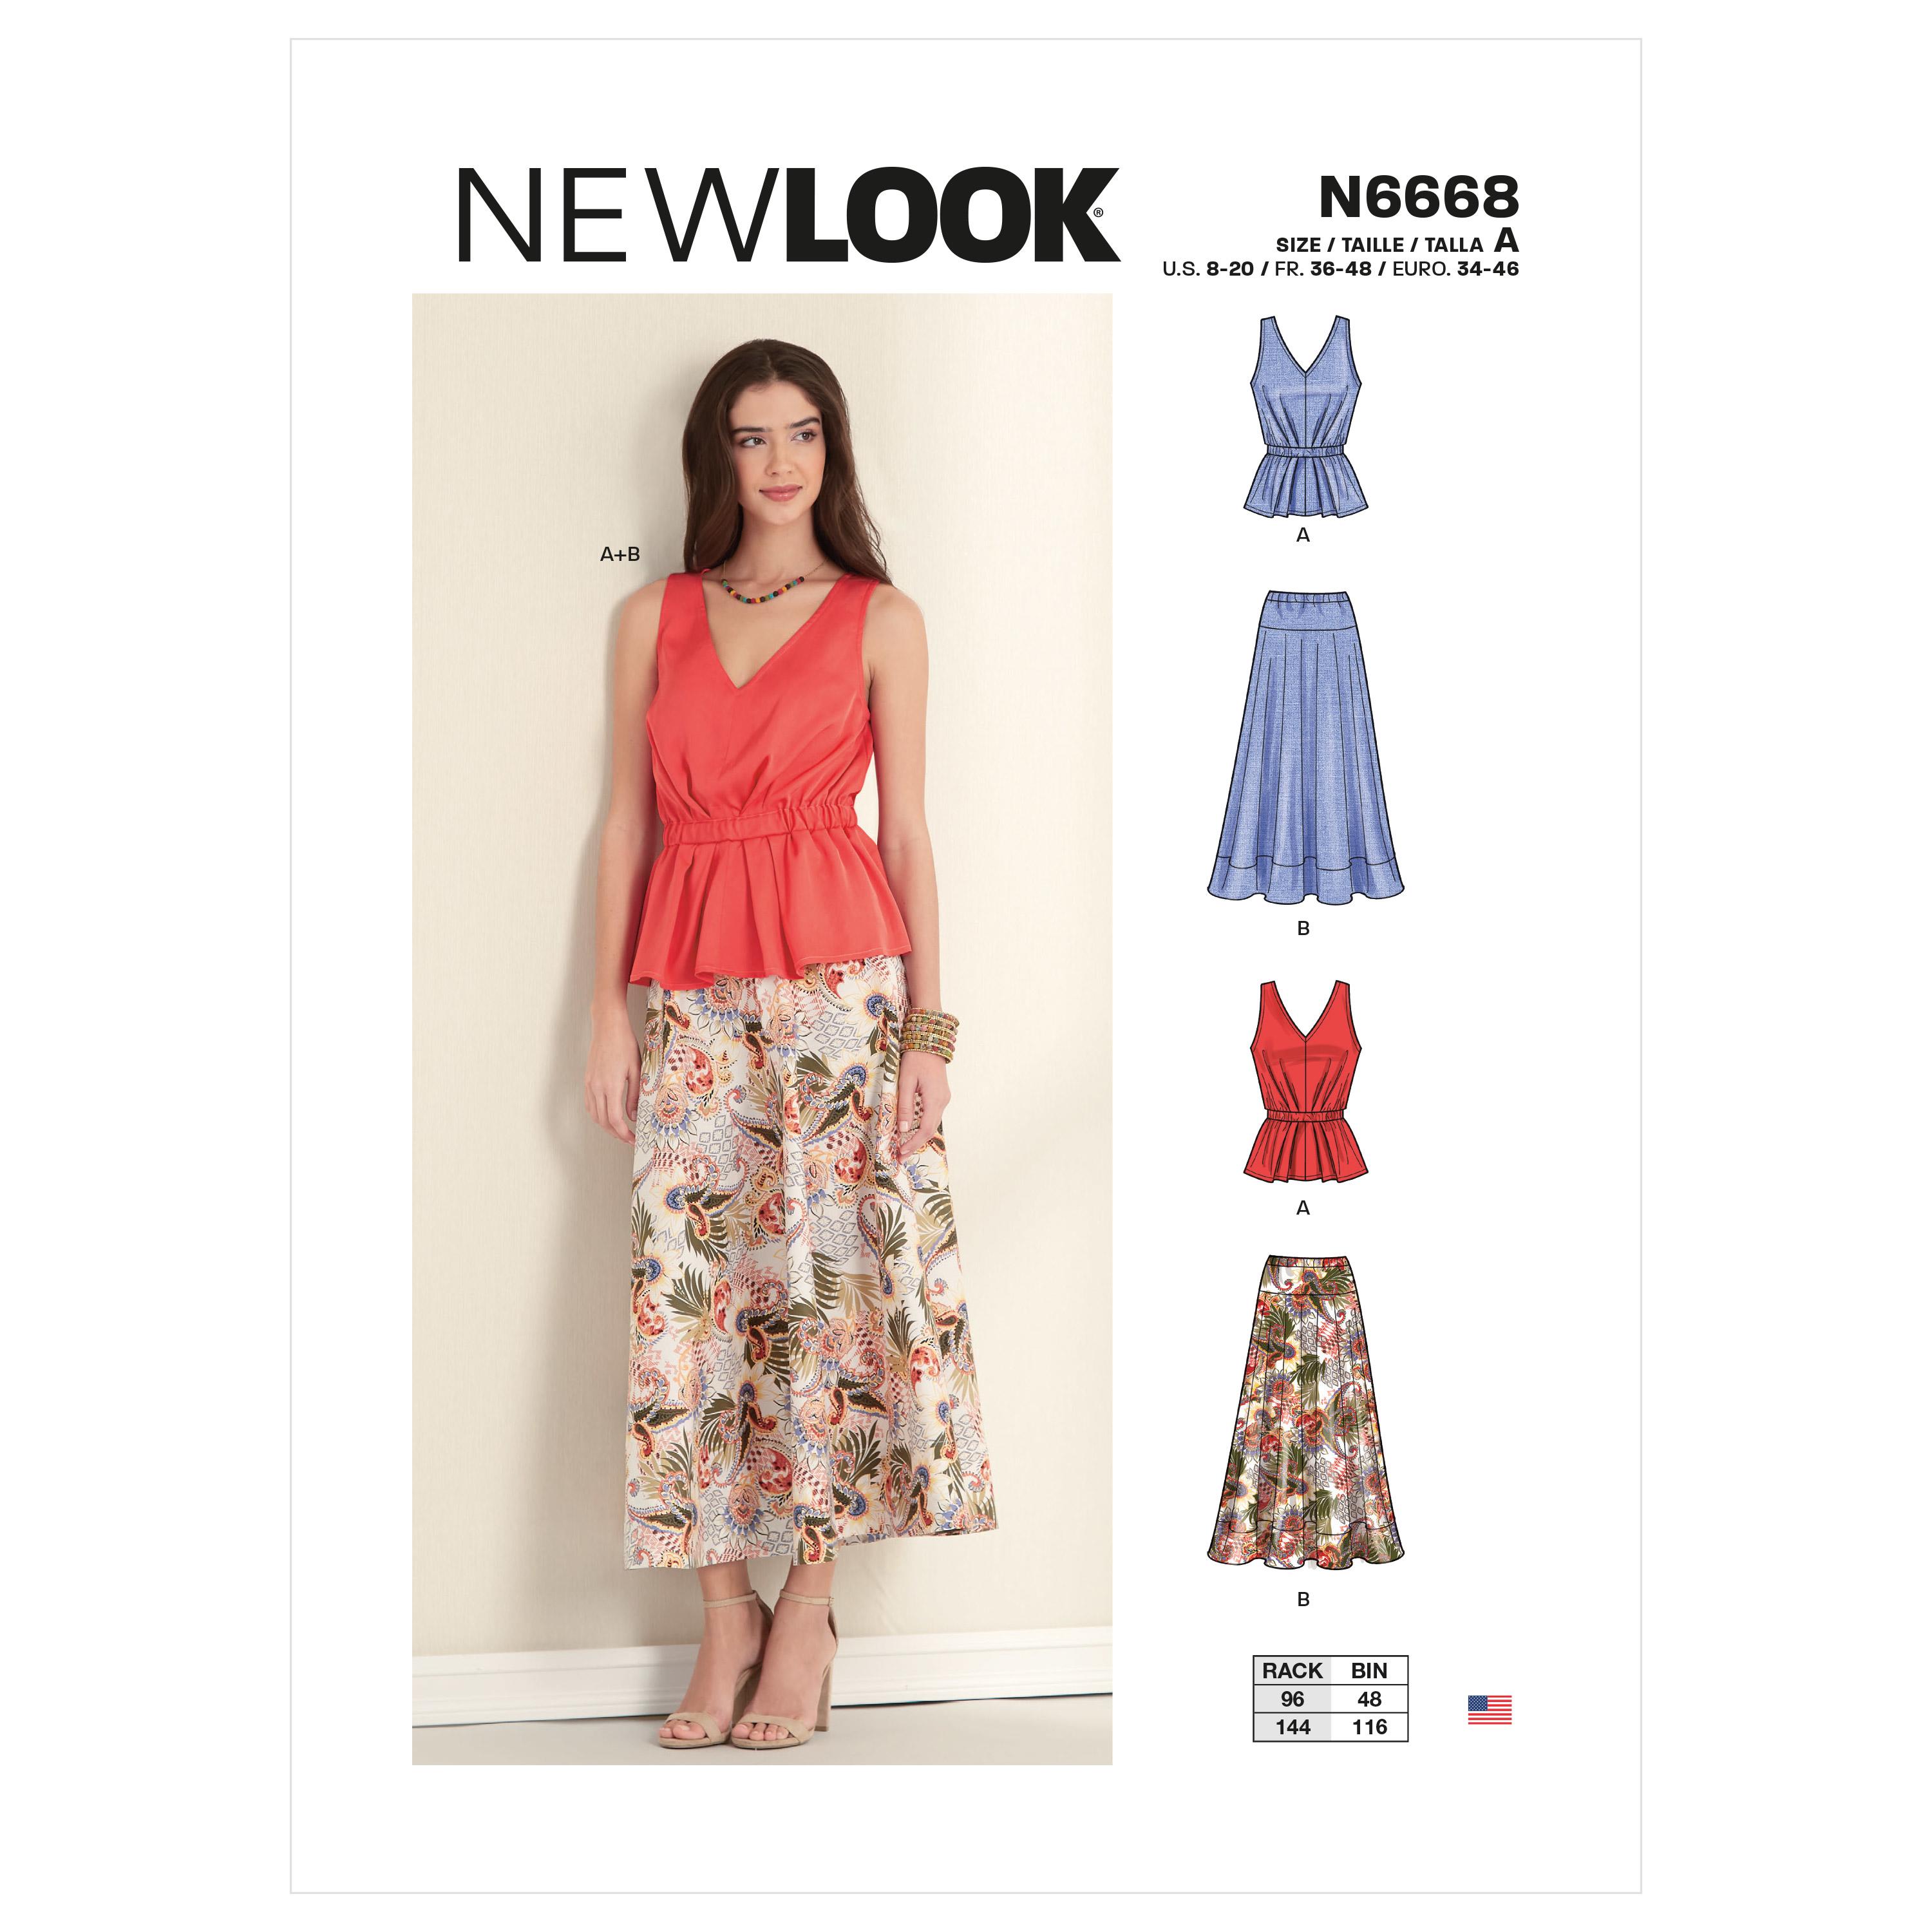 New Look Sewing Pattern N6668 Misses' Top & Skirt